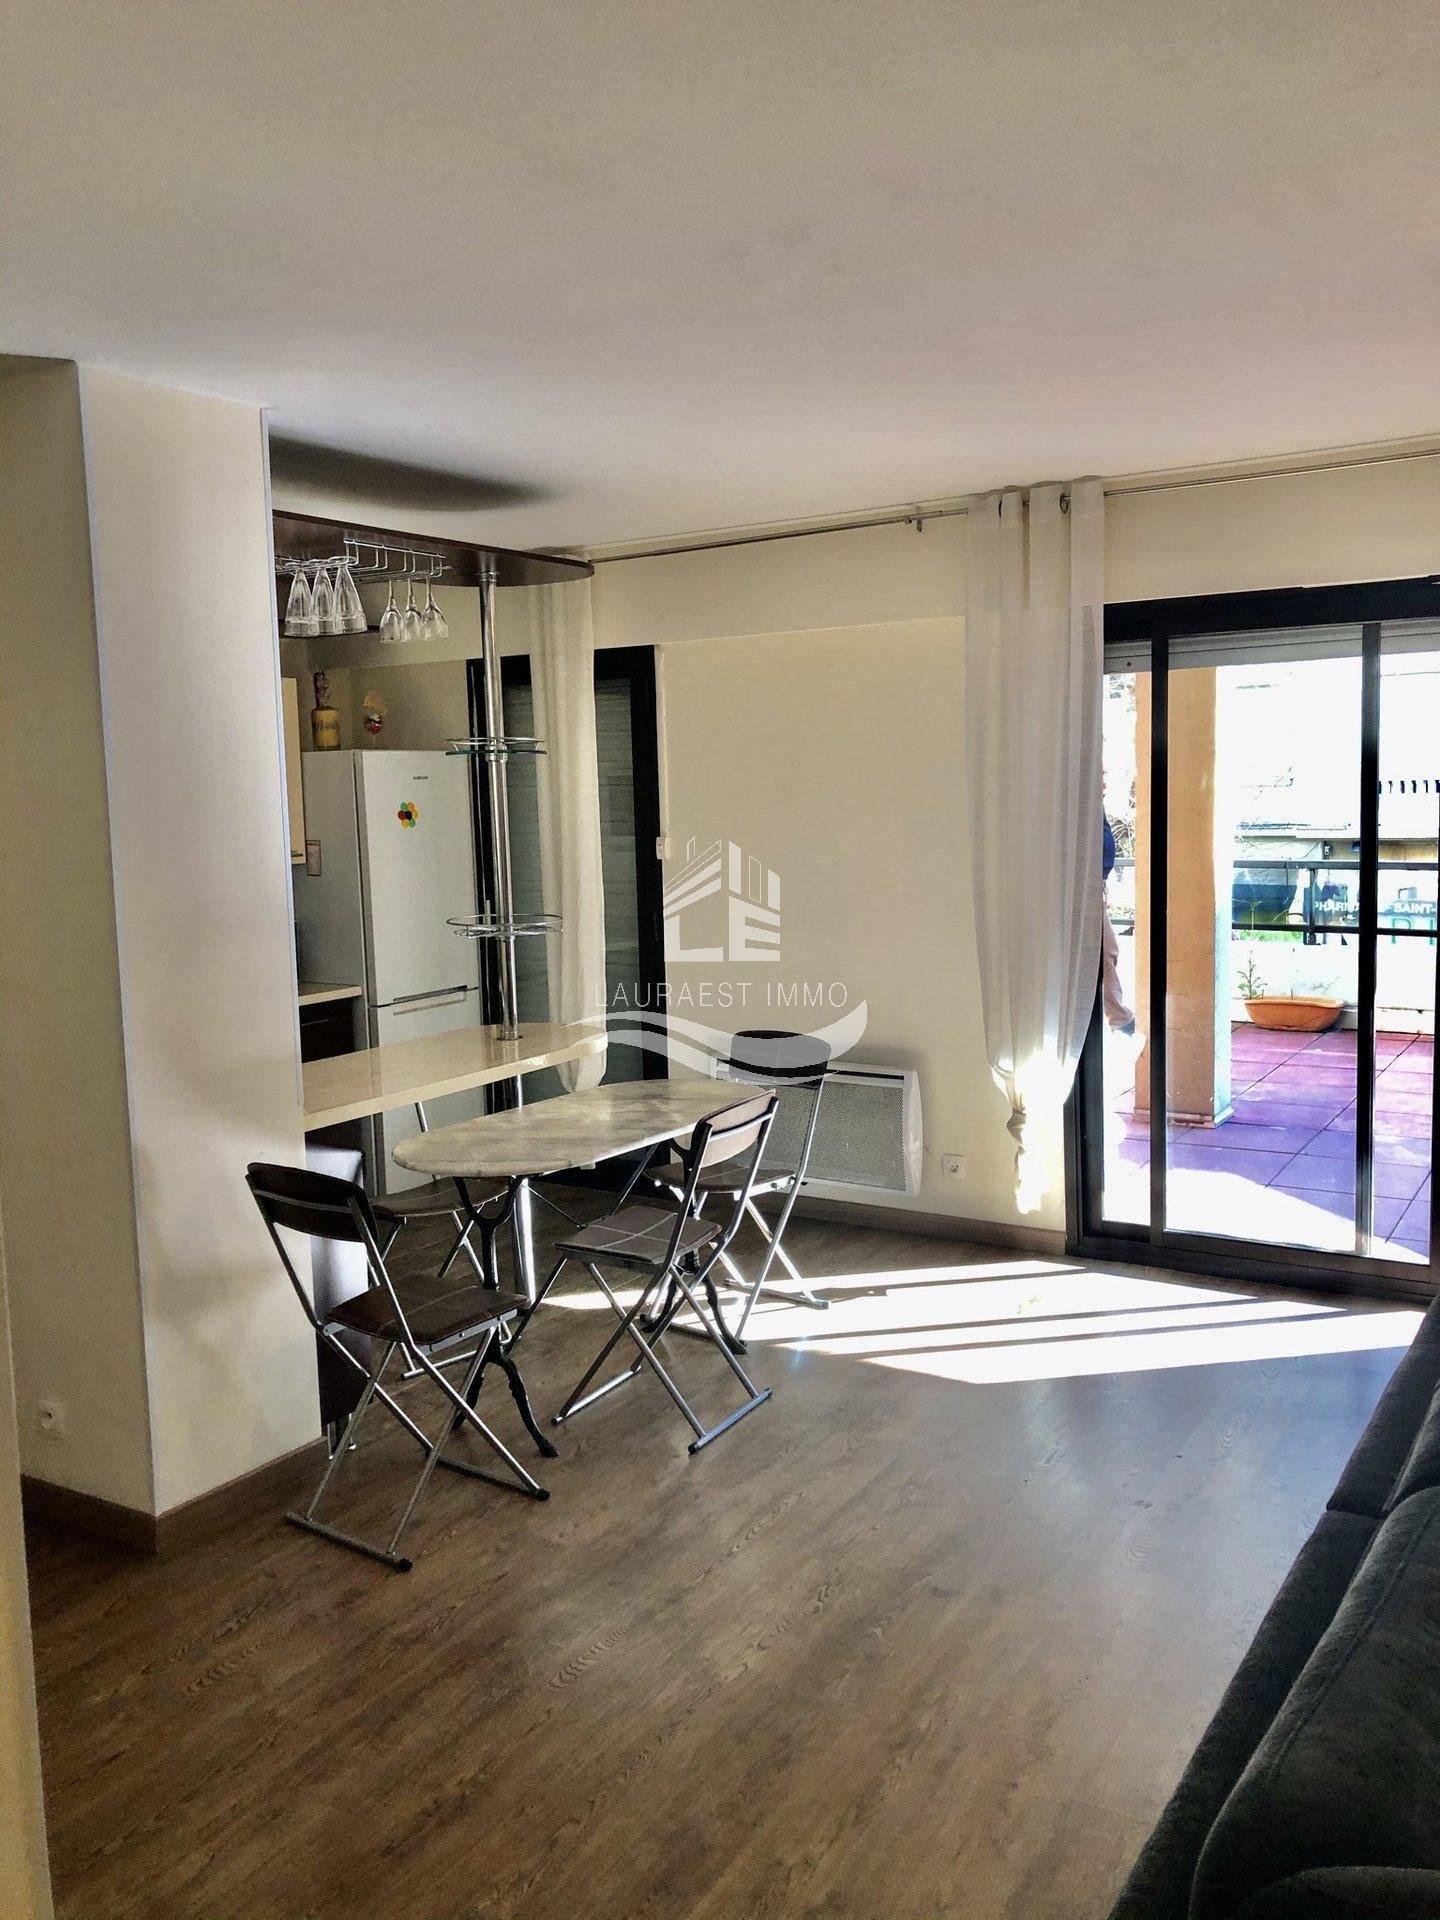 Vente Appartement 70m² 3 Pièces à Nice (06100) - Lauraest - Immo